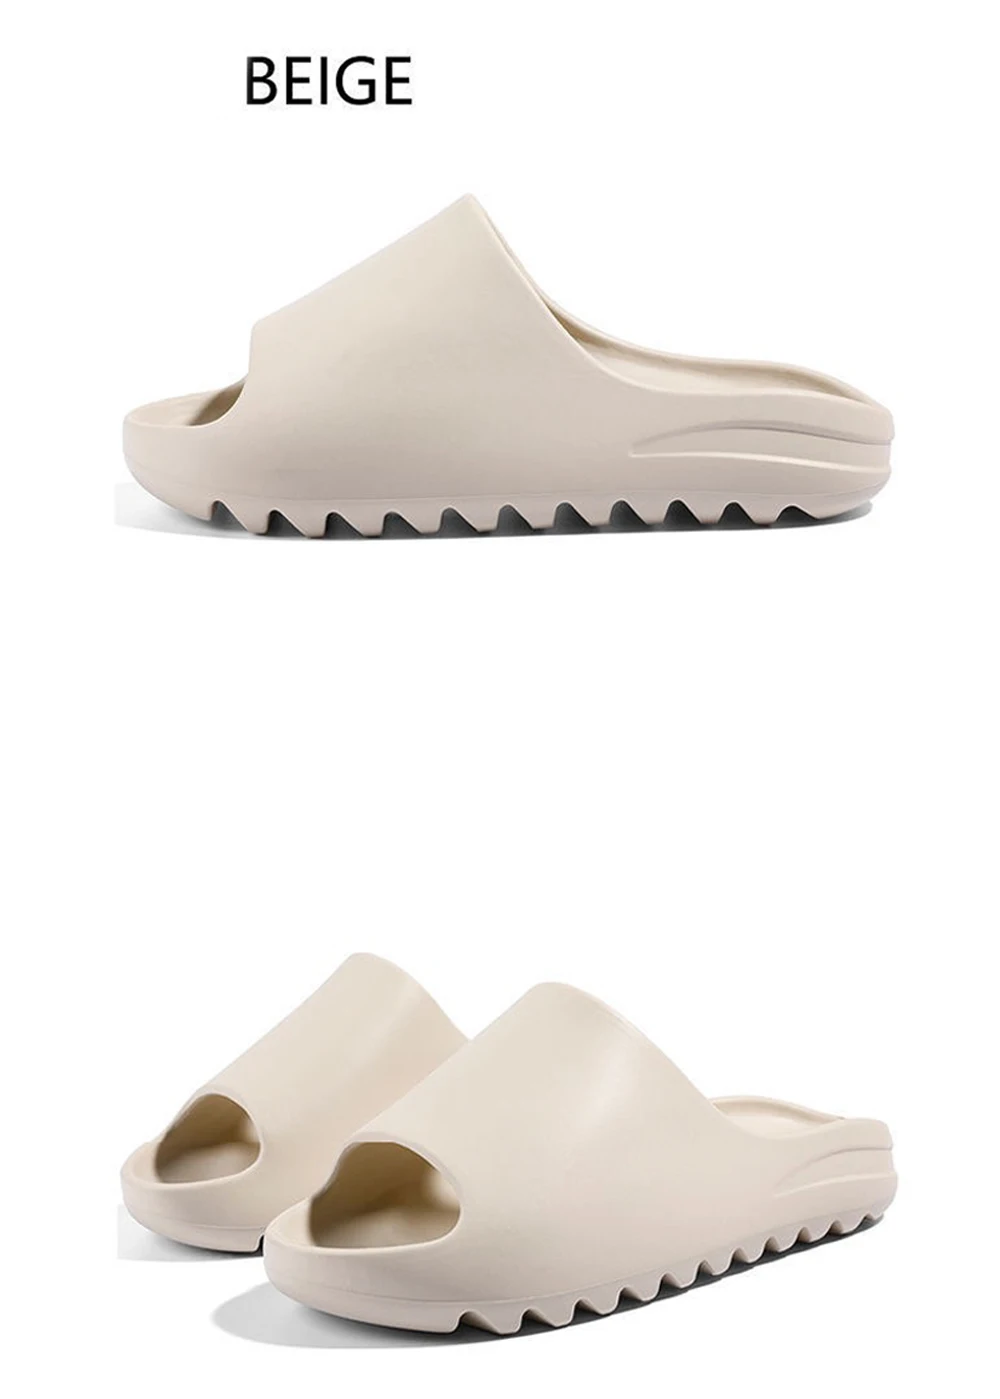 Factory customize anti-slip soft cozy pillow cloud bubble platform women home sandal slippers